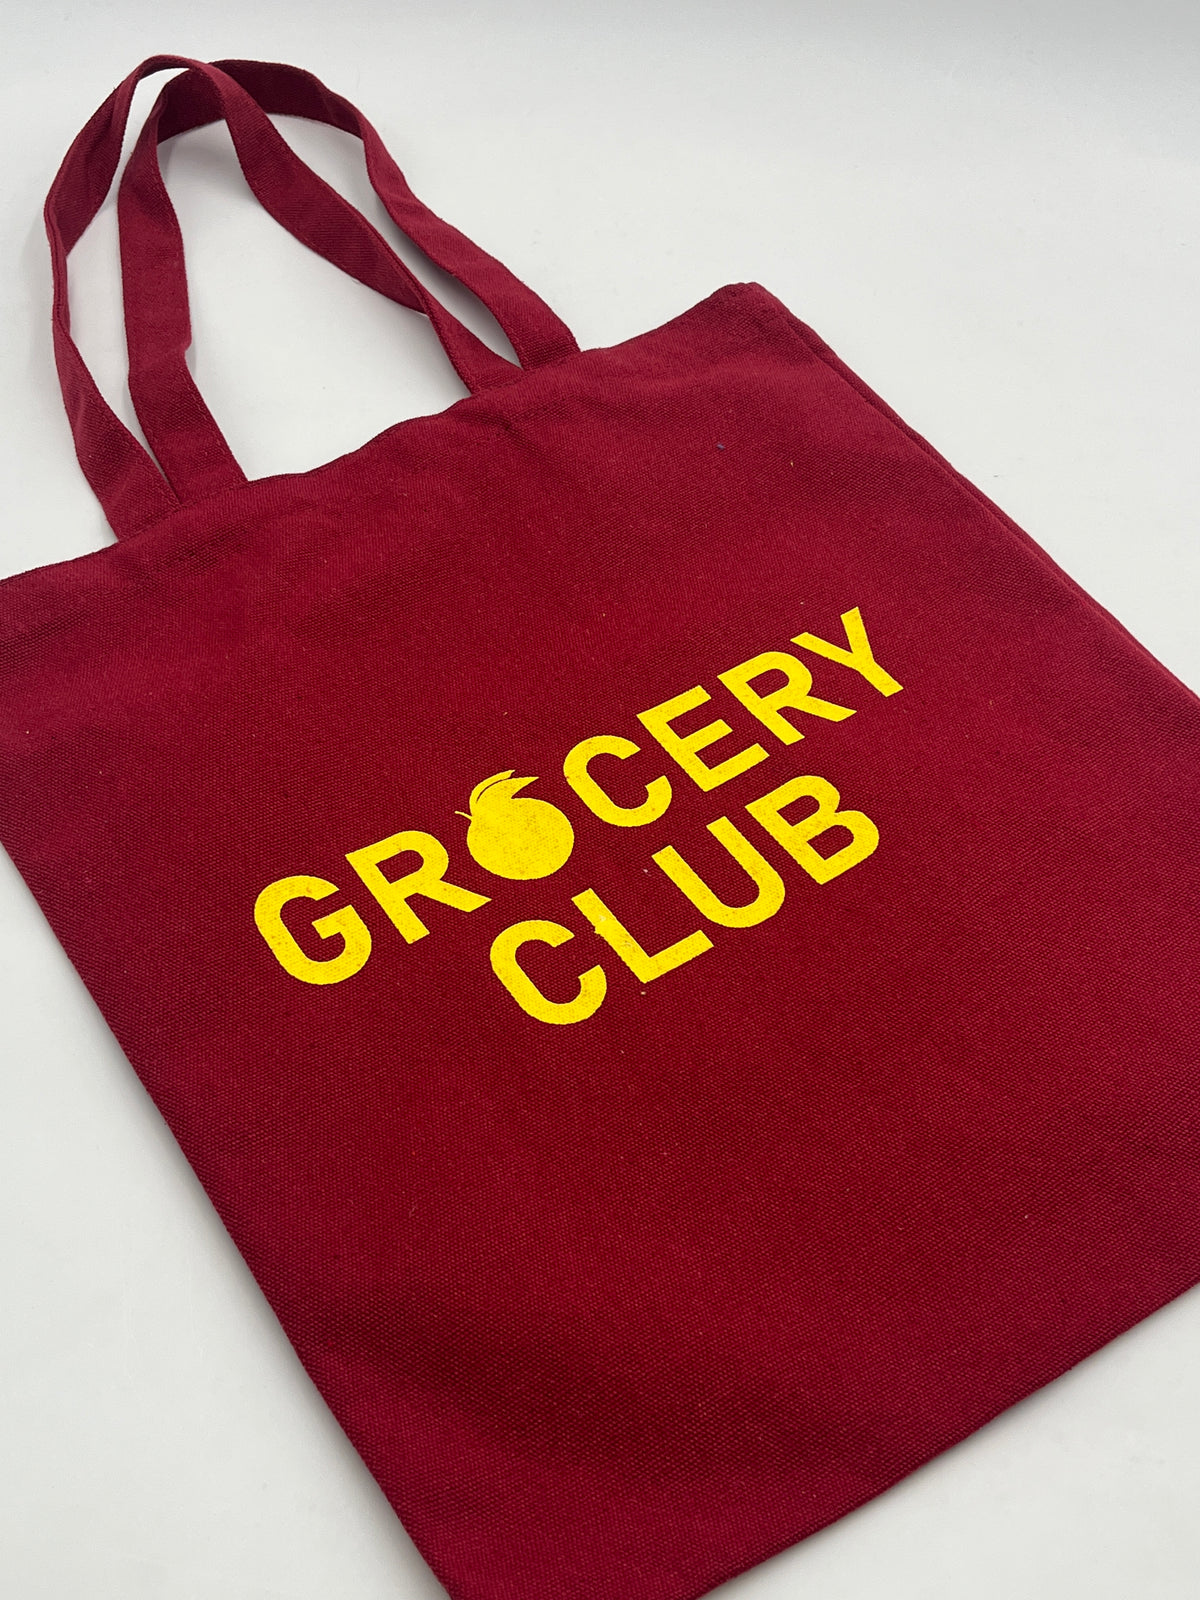 Oranges Global Grocery Club Tote Bag Red